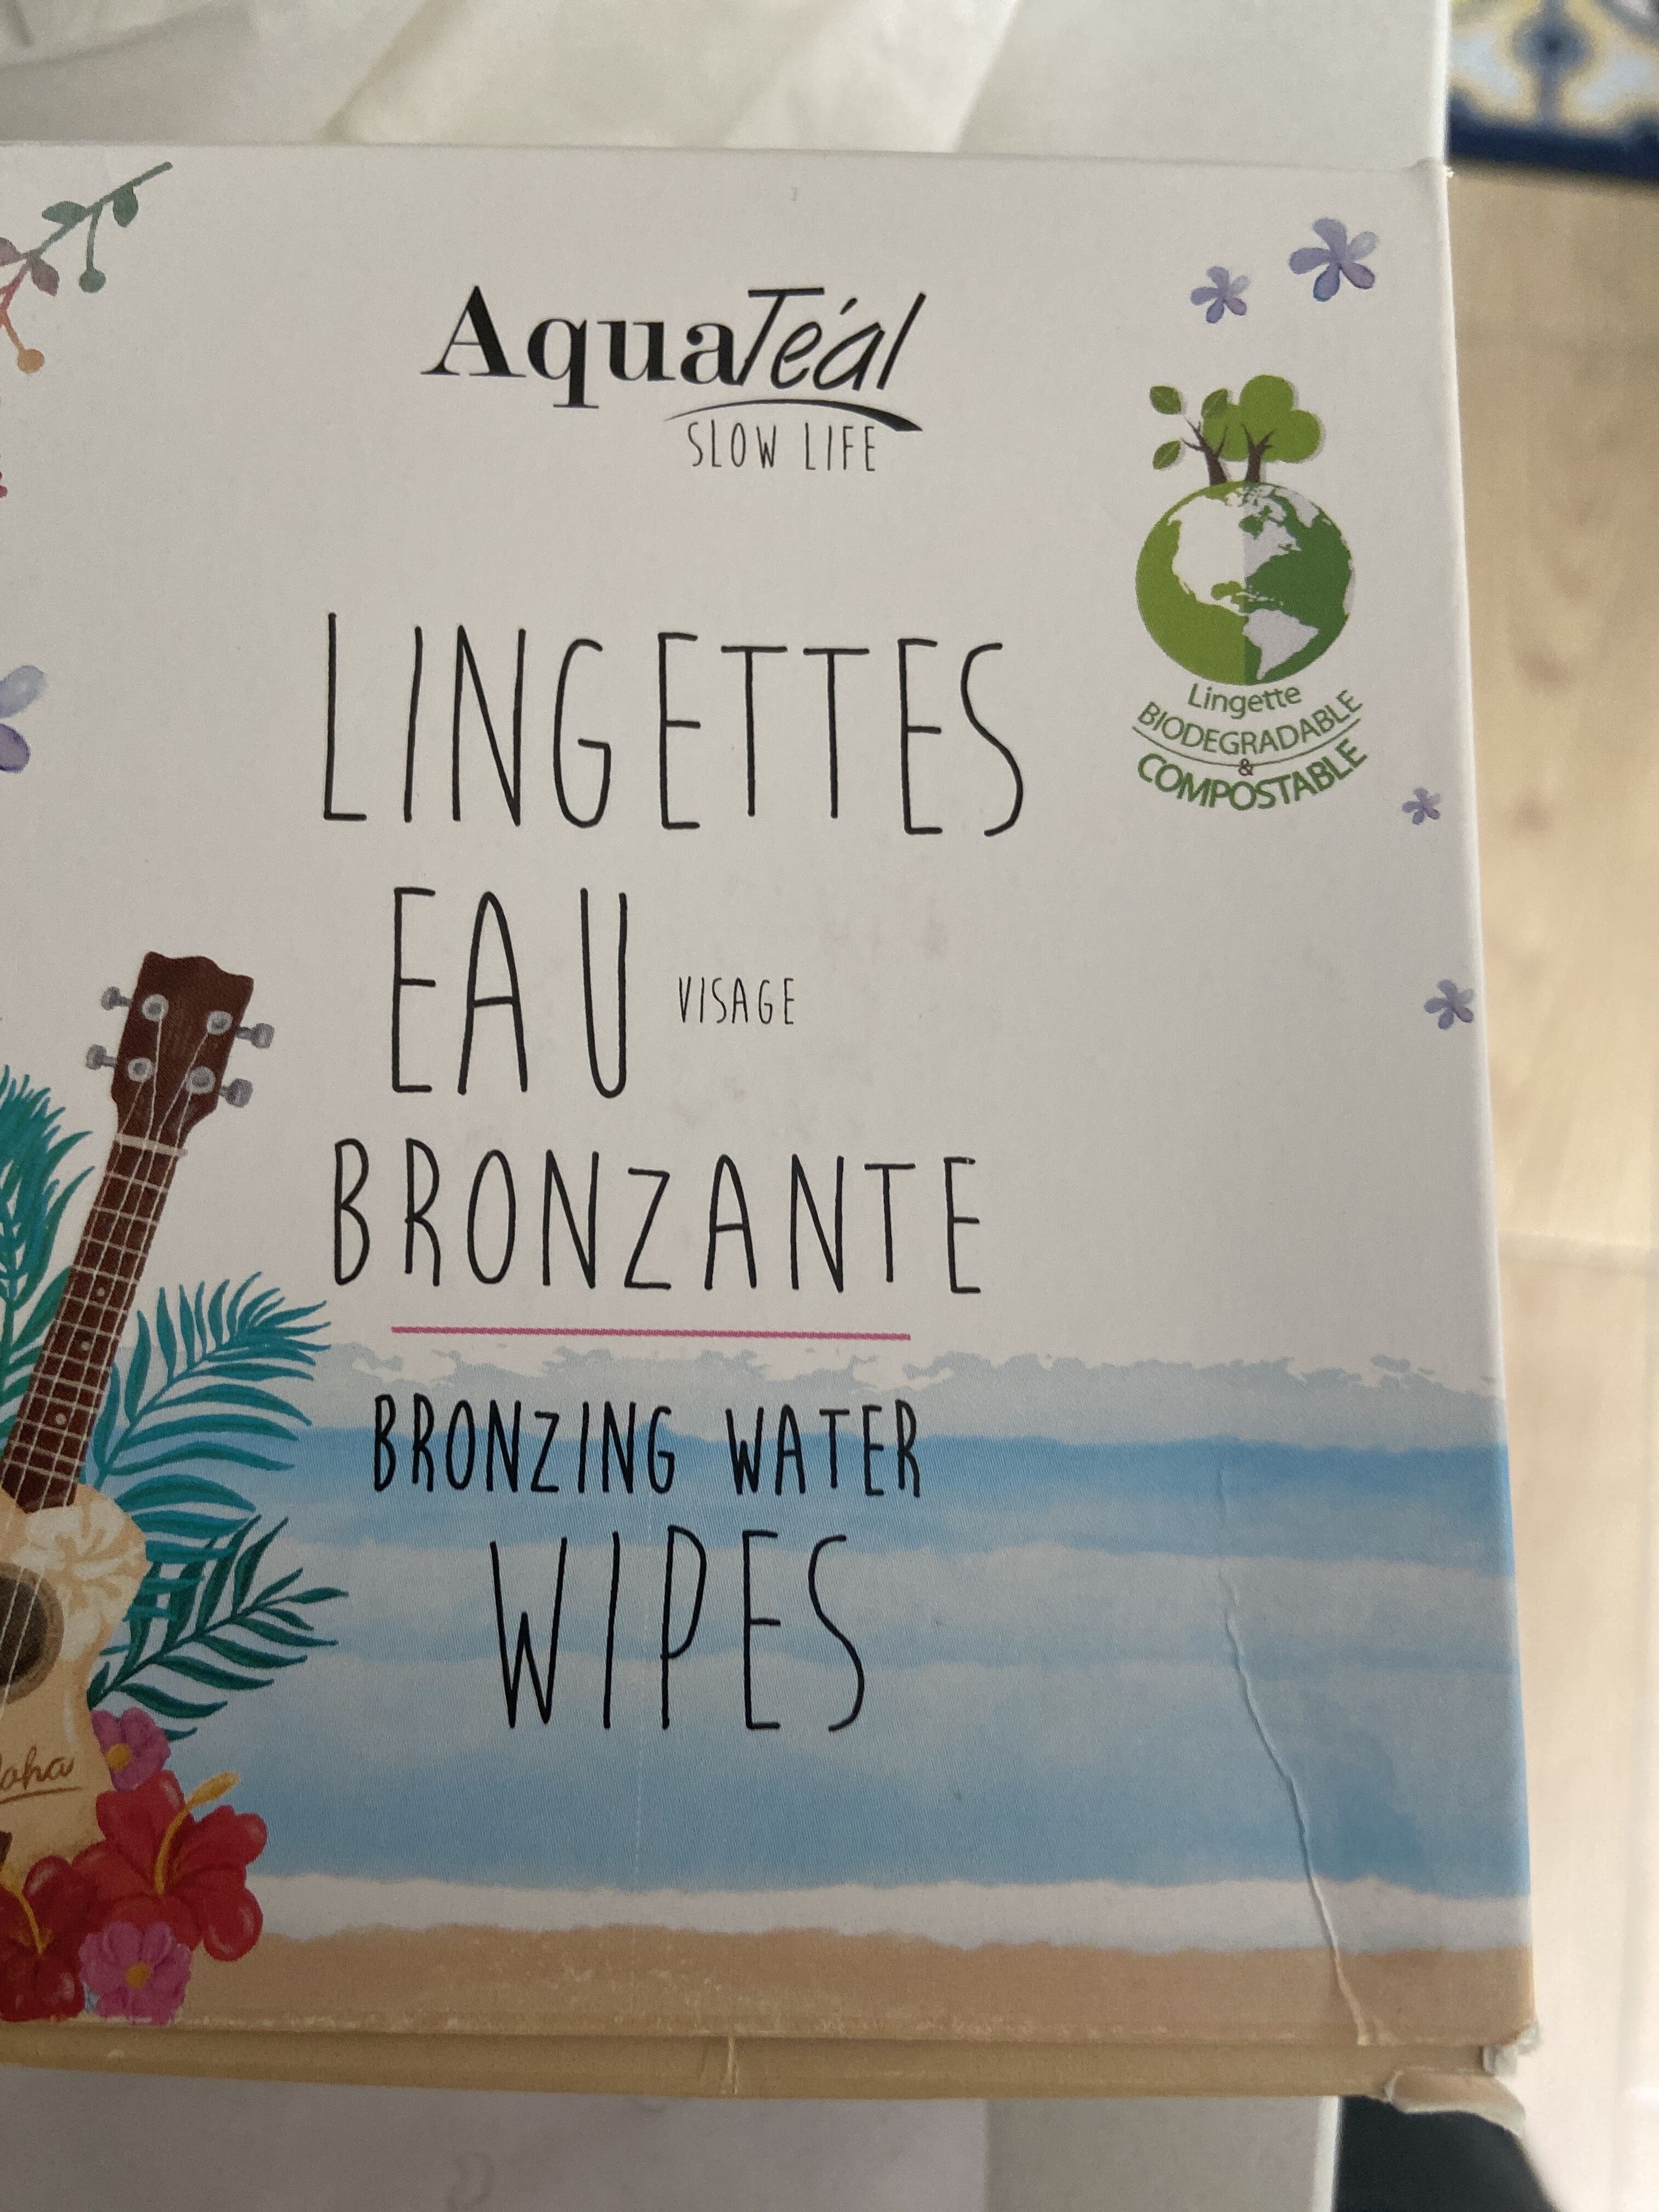 Lingettes eau bronzante - Produkt - fr